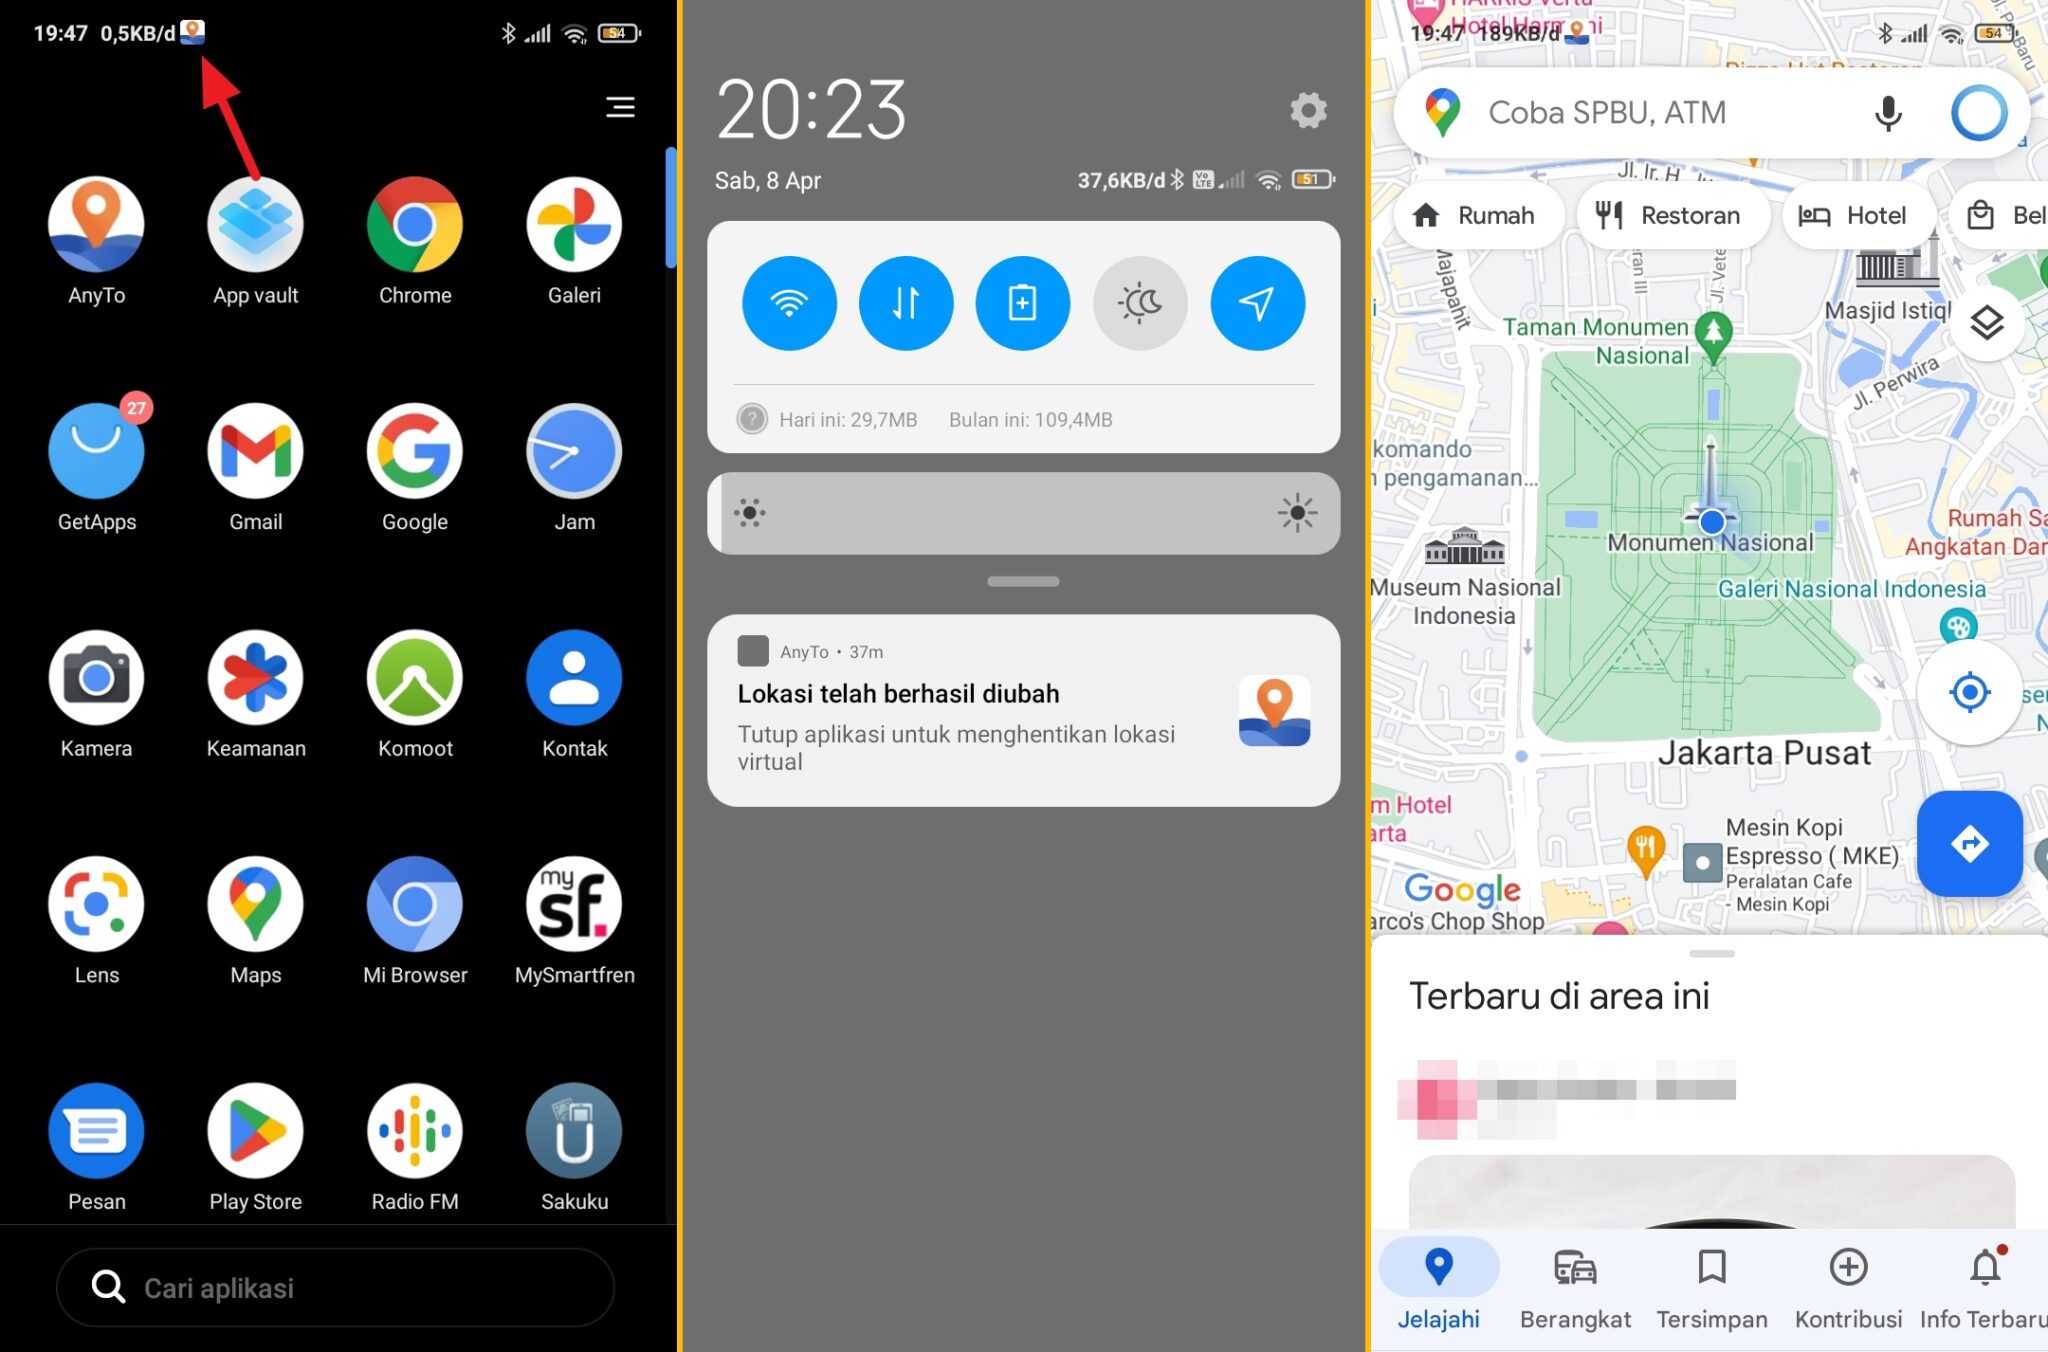 fake gps berjalan scaled Cara Menggunakan Fake GPS di Android 100% Tanpa Root! 15 fake gps berjalan scaled